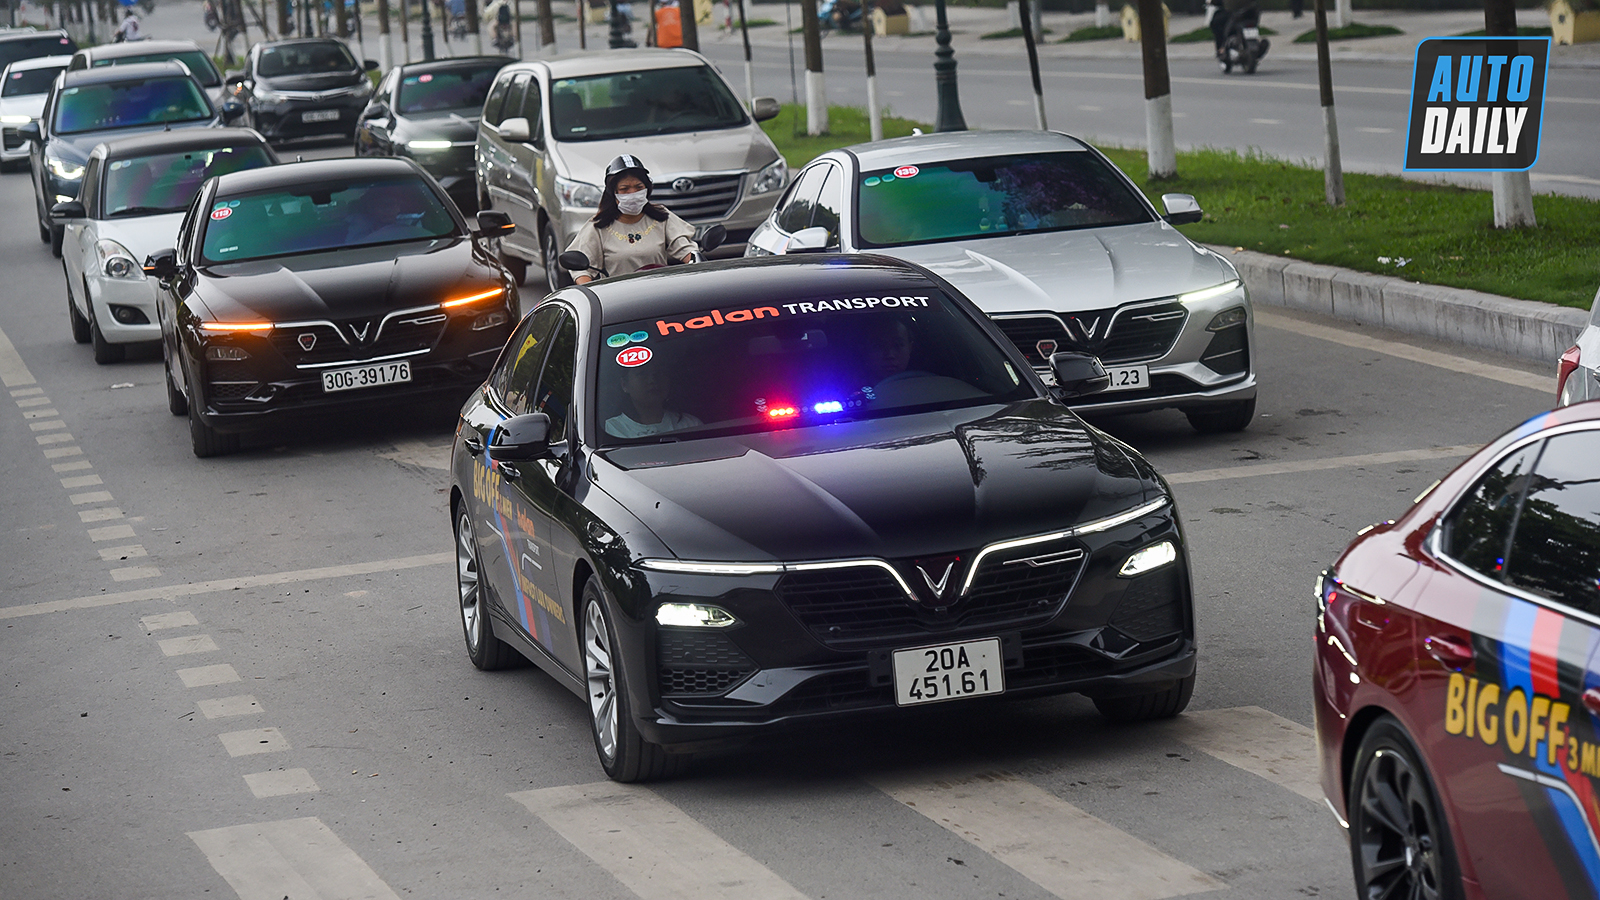 Chùm ảnh gần 60 xe VinFast Lux tại Hà Nội xuất phát Offline 3 miền tại Hội An dsc-62999-copy.jpg